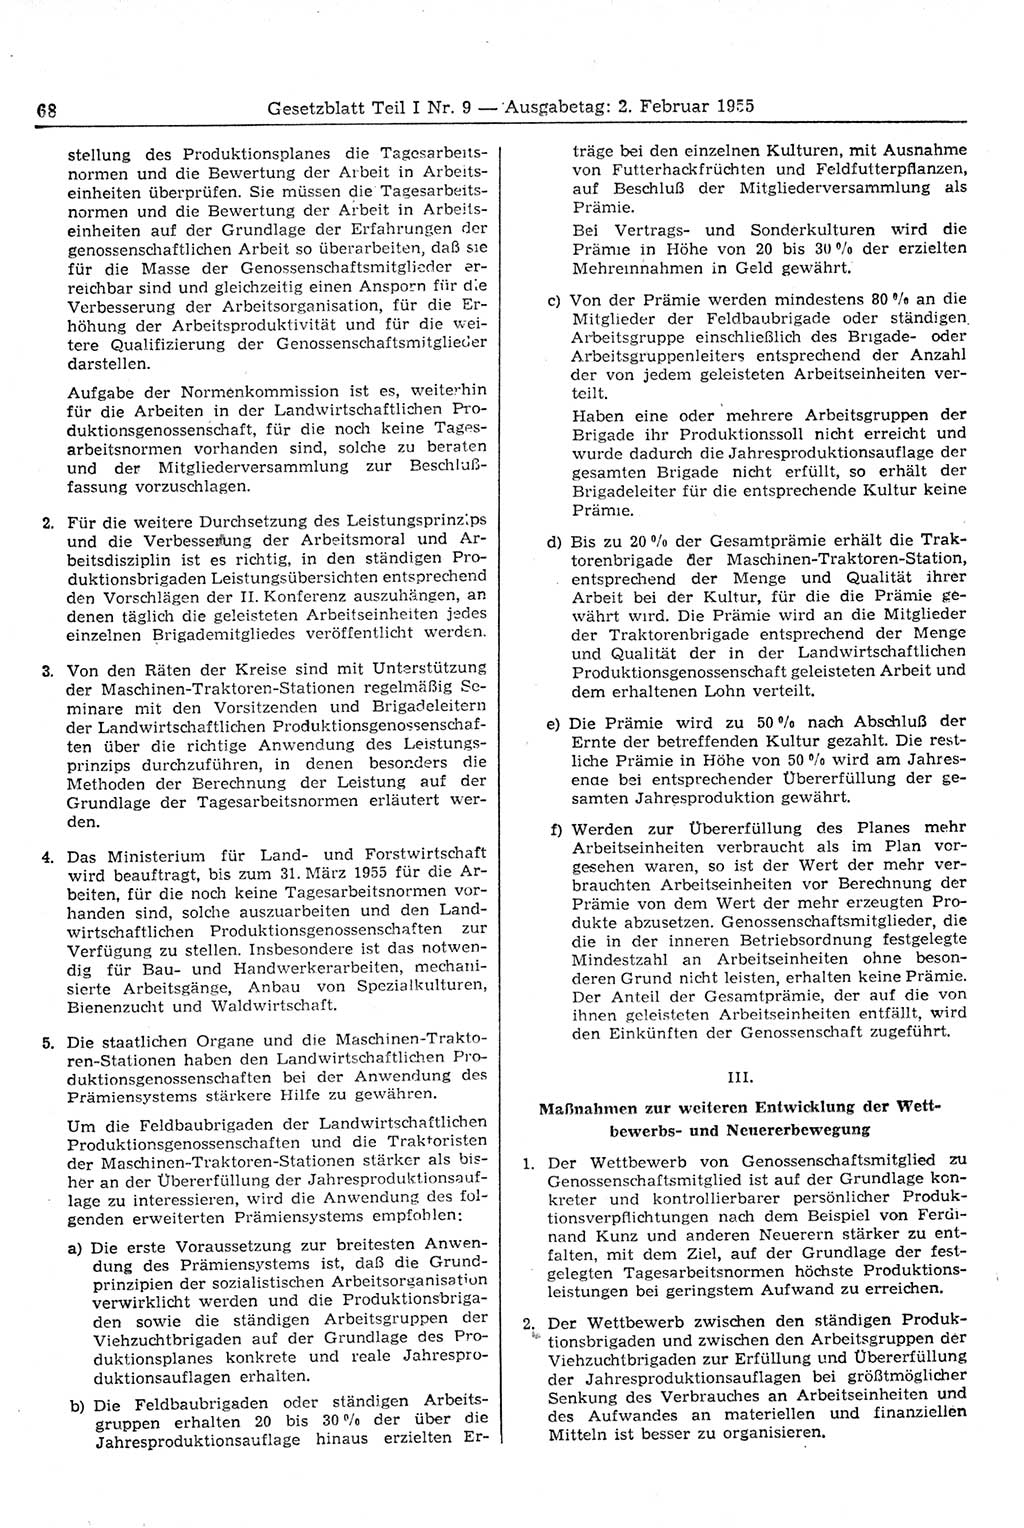 Gesetzblatt (GBl.) der Deutschen Demokratischen Republik (DDR) Teil Ⅰ 1955, Seite 68 (GBl. DDR Ⅰ 1955, S. 68)